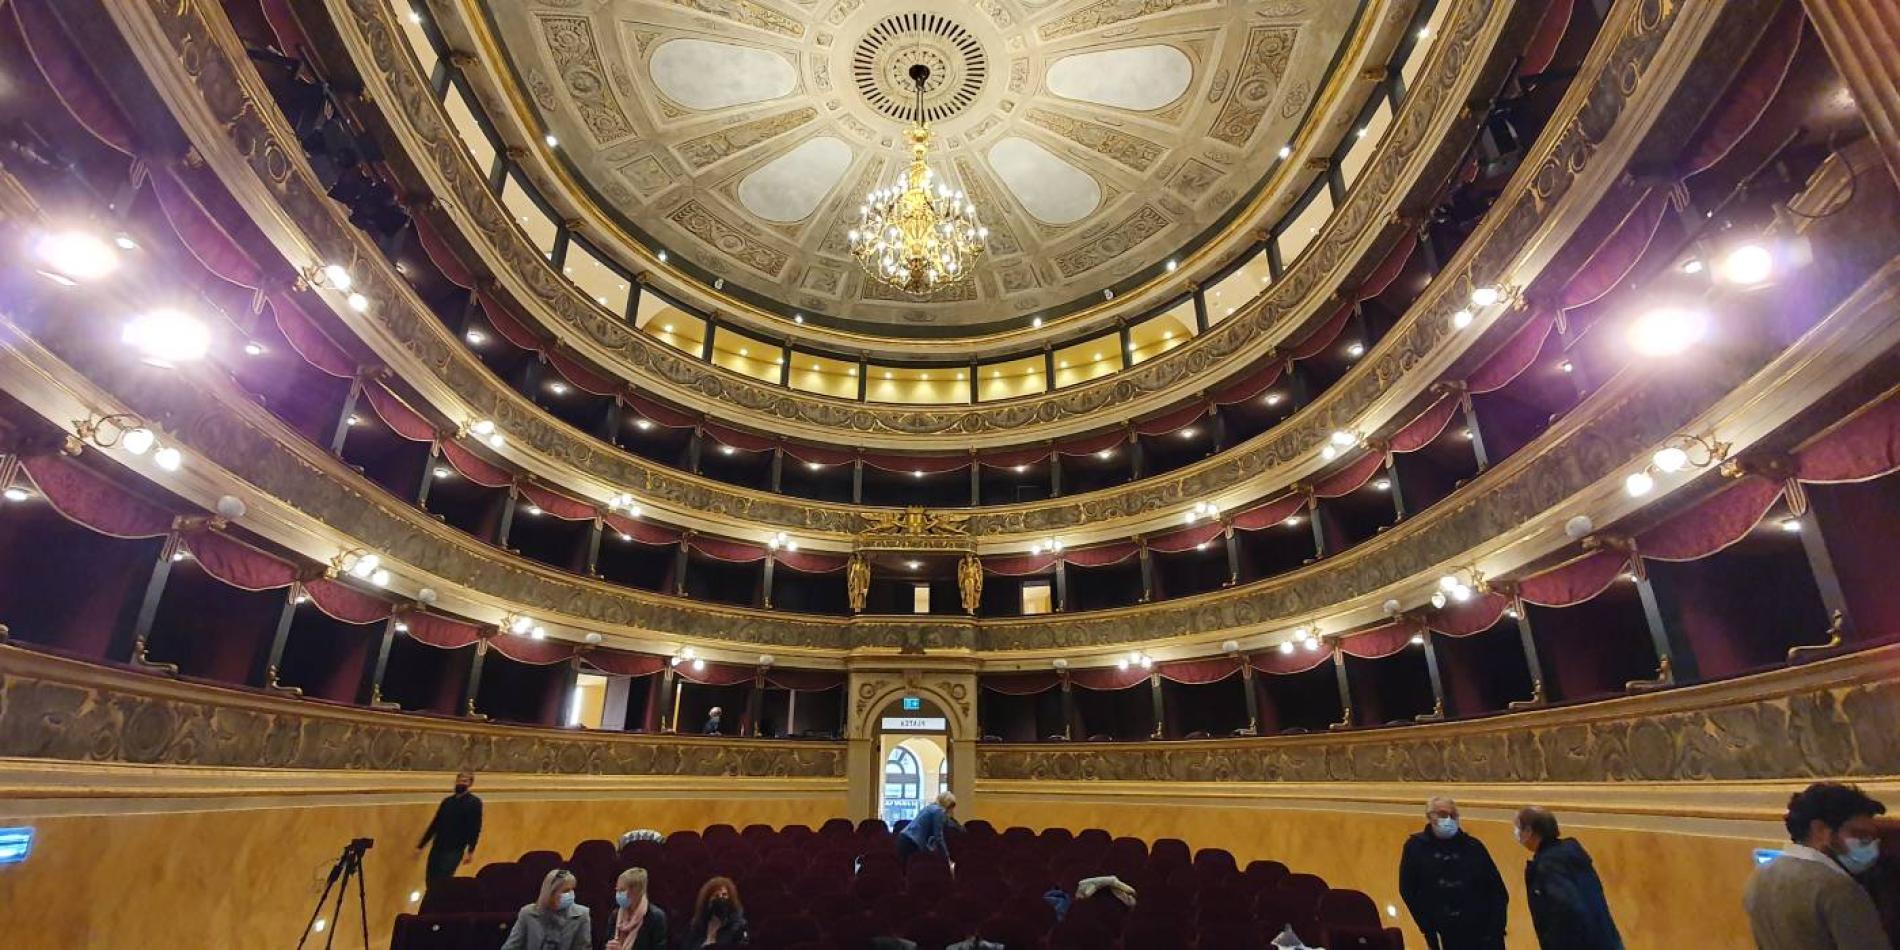 Novi, le immagini del teatro Marenco restaurato